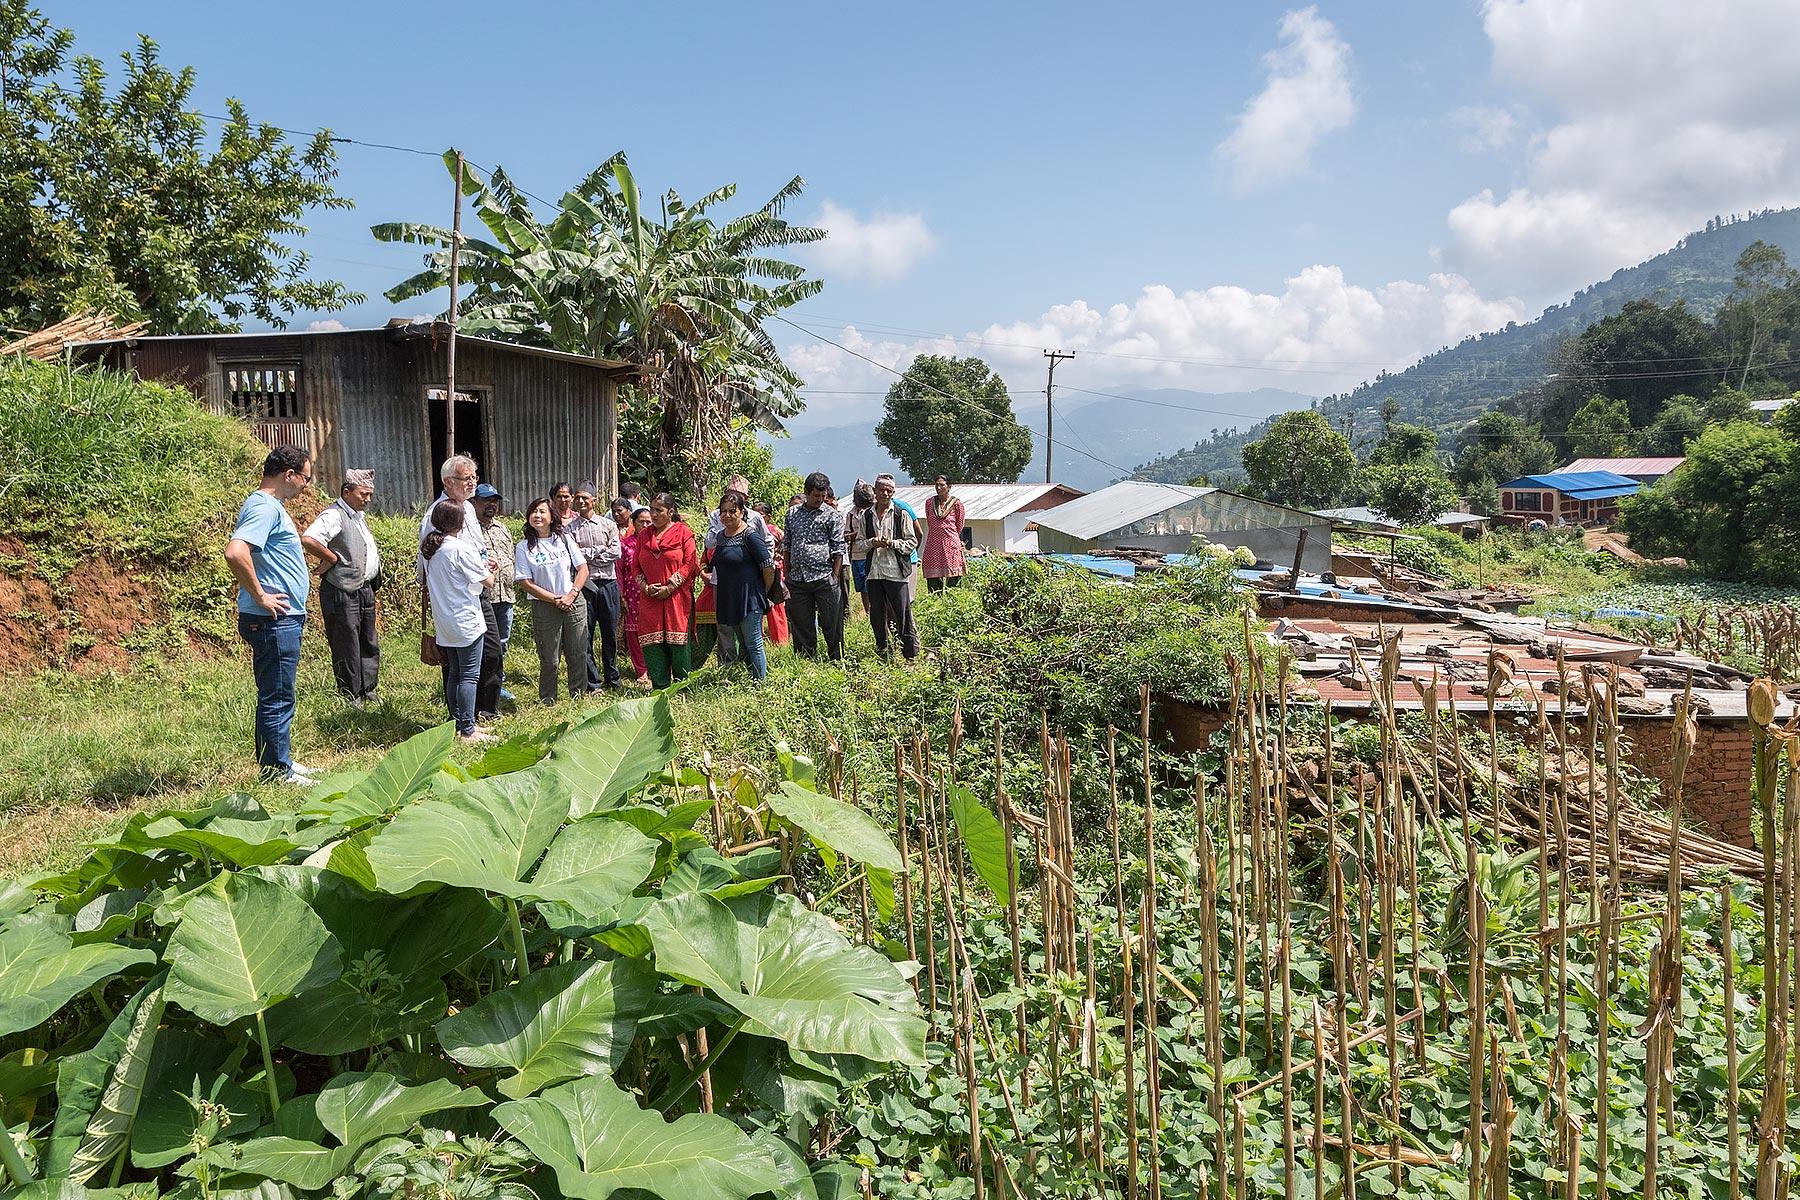 Fruchtbarer Boden: Gemüsegärten der Gemeinschaft, die mit der Unterstützung des LWB-Nepal angelegt wurden, verbessern nicht nur die Ernährungslage. Der Produktionsüberschuss wird auf dem Markt verkauft und sorgt für zusätzliches Einkommen. Alle Fotos: LWB/Albin Hillert